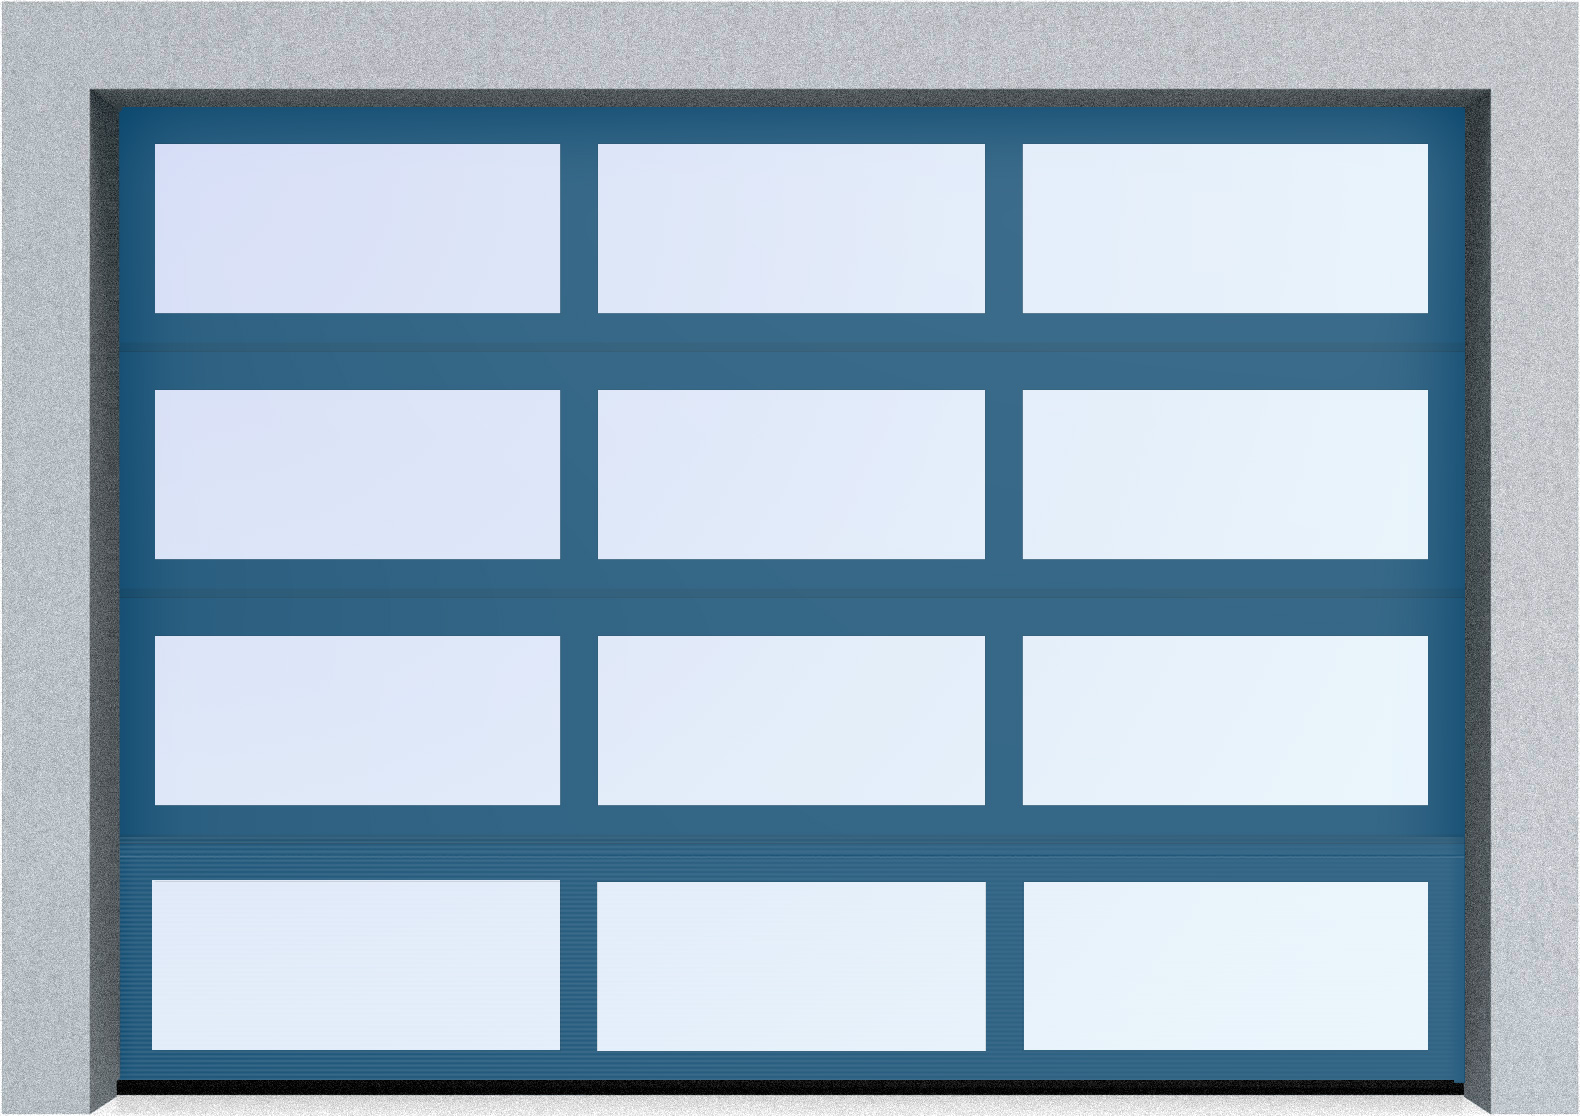  Секционные панорамные ворота серии AluTrend (АЛП) 2500х2500 нижняя панель стандартные цвета, фото 3 